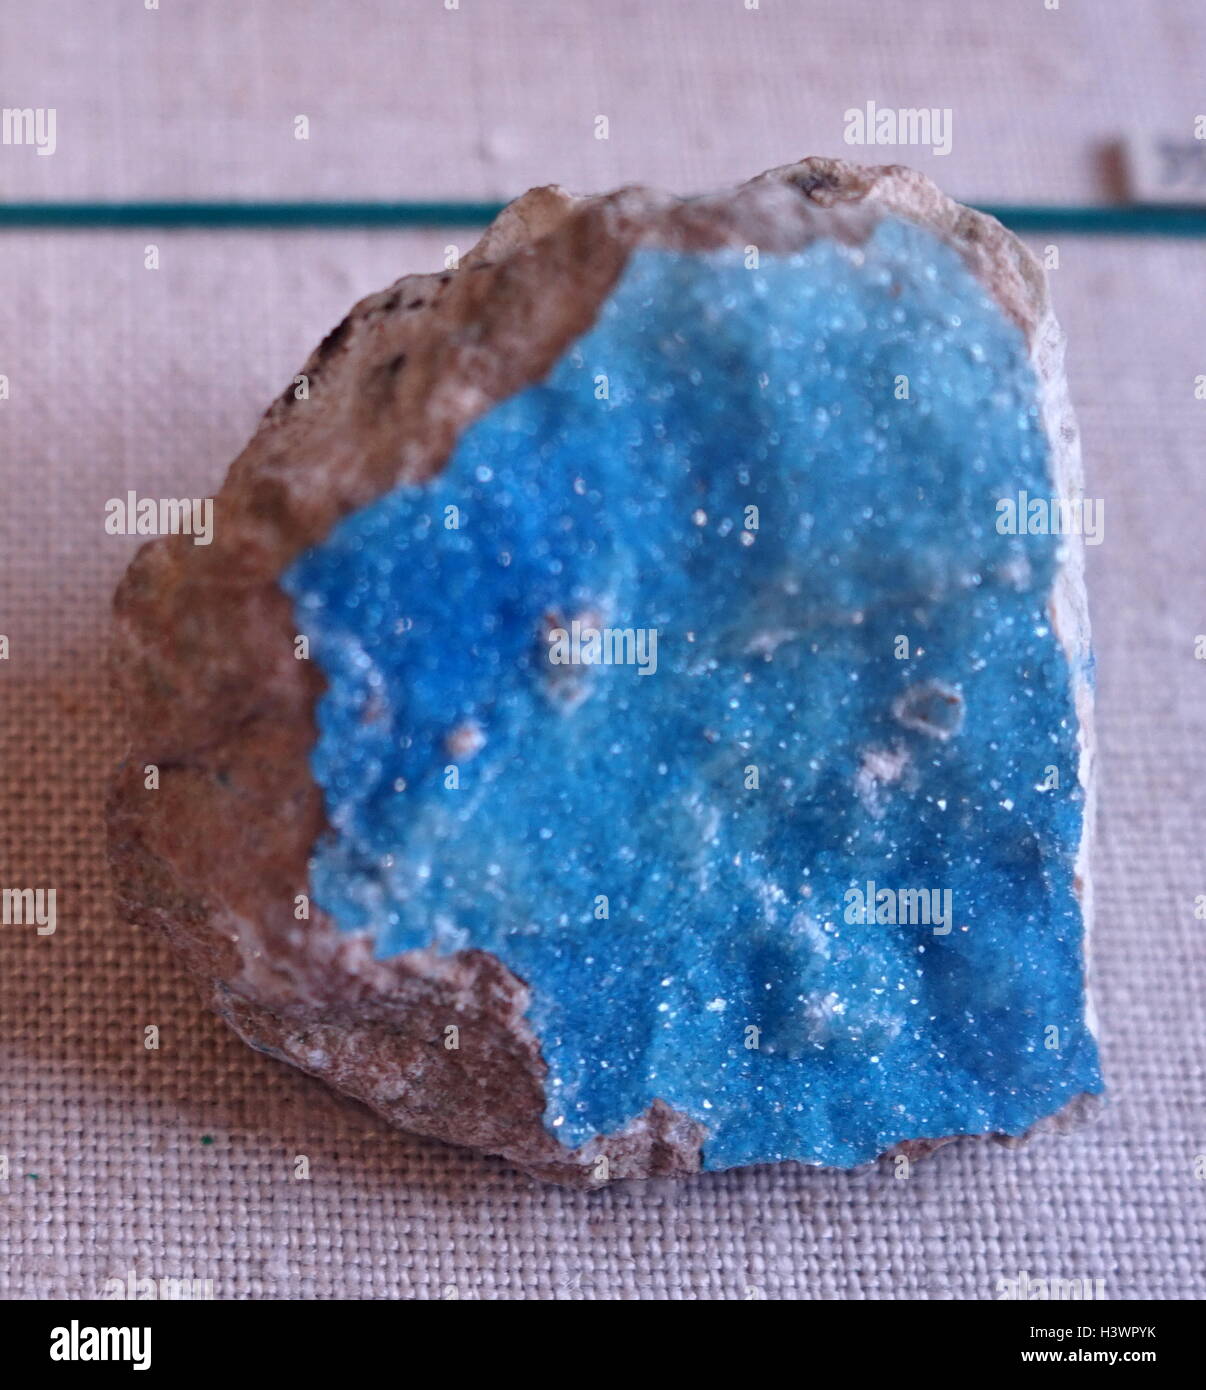 Eine Probe des Kinoite, ein leichtes Blau Kupfer Silikat-Mineral. Vom 21. Jahrhundert Stockfoto